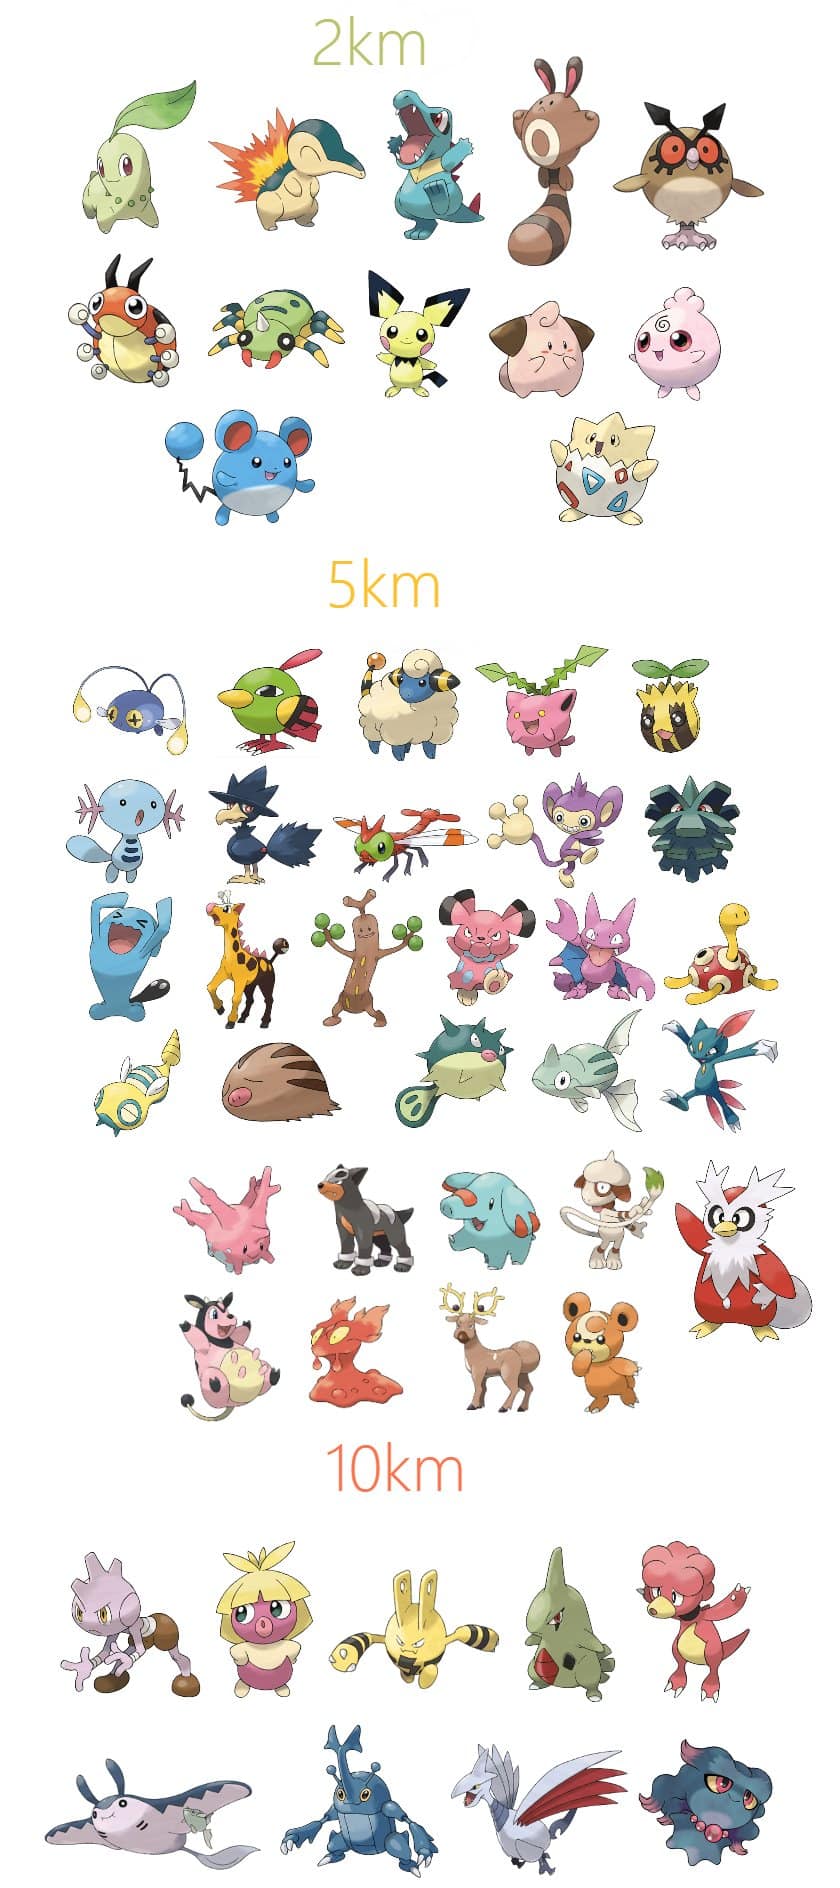 Veja como evoluir seus Pokémon na segunda geração de Pokémon GO